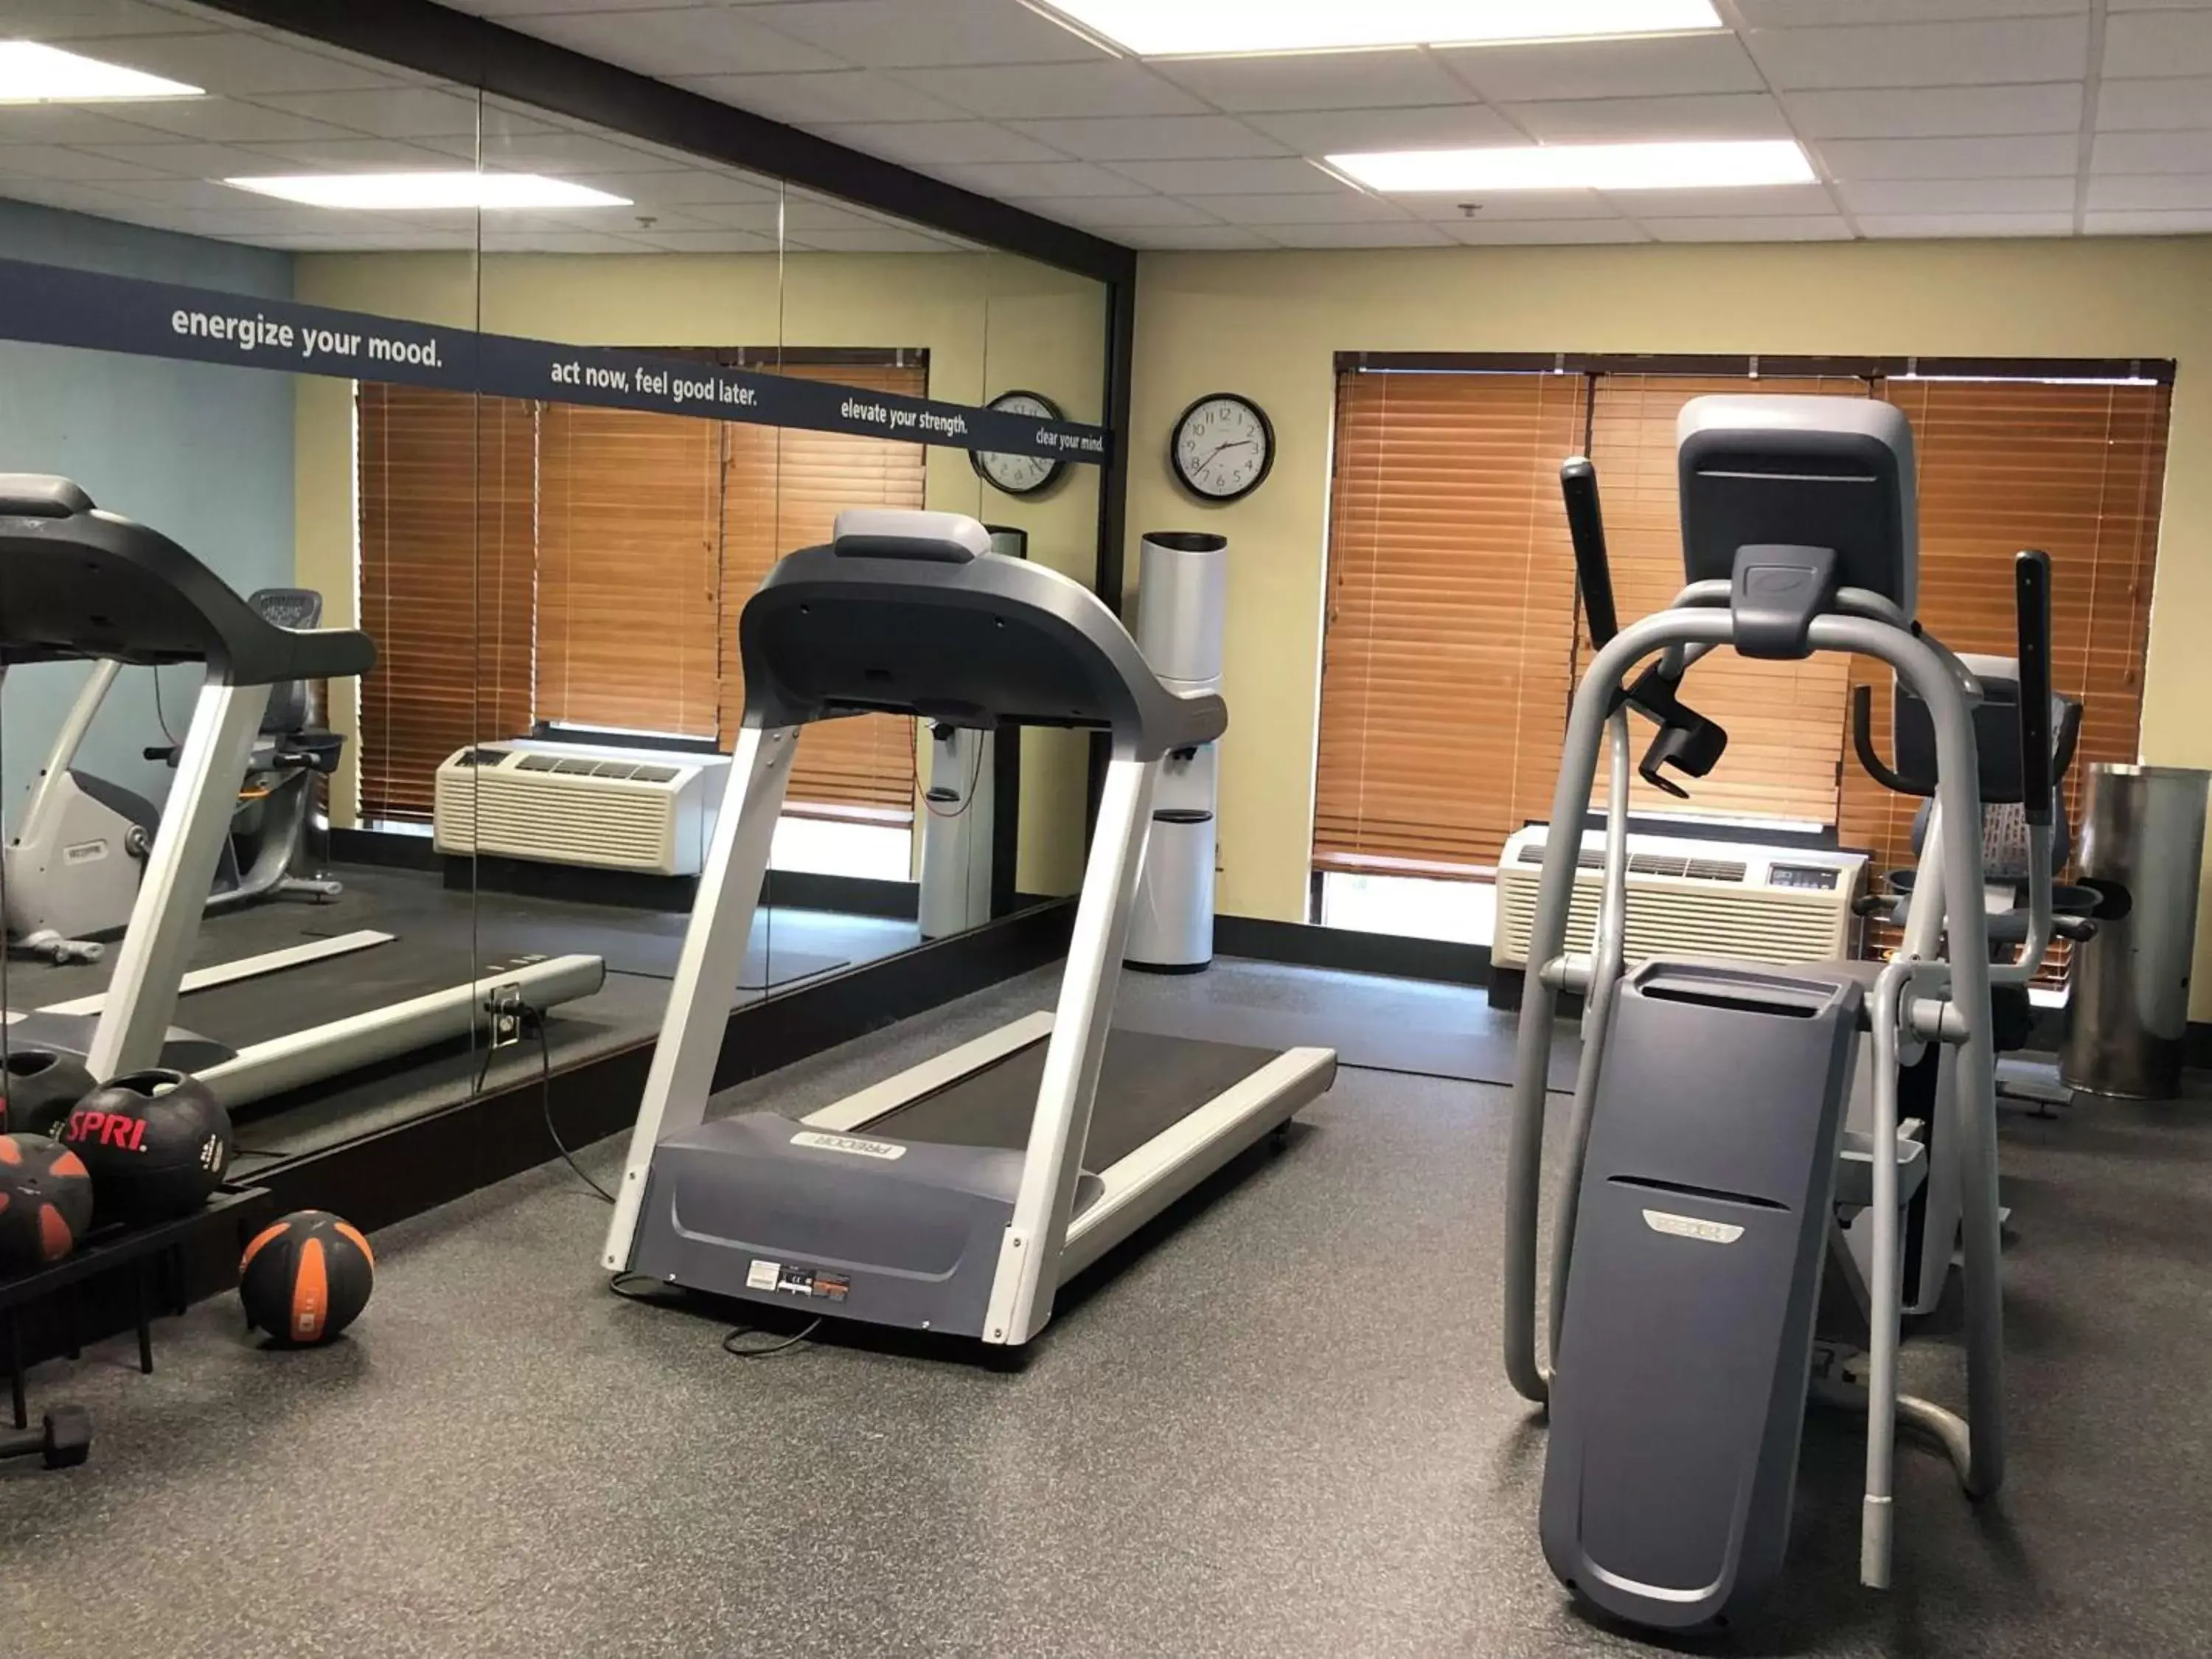 Fitness centre/facilities, Fitness Center/Facilities in Hampton Inn El Dorado